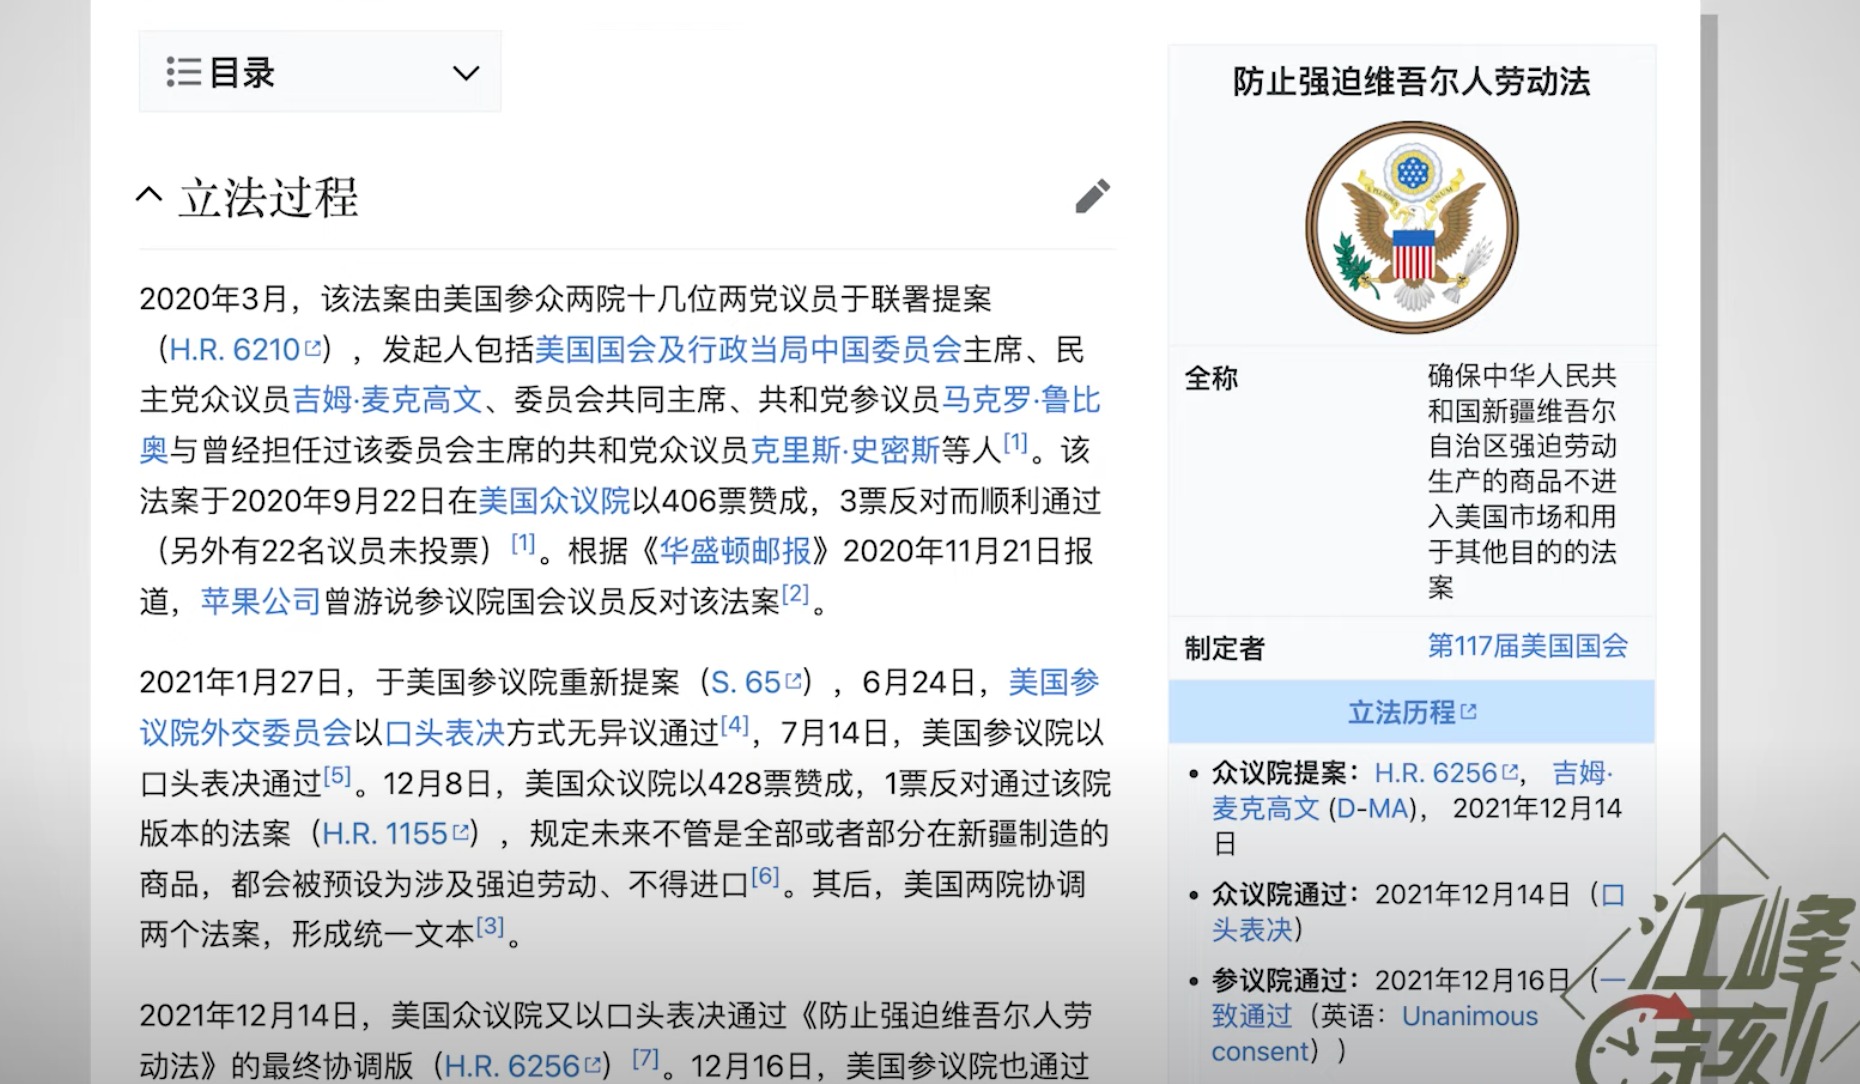 U.S. Xinjiang-related Laws